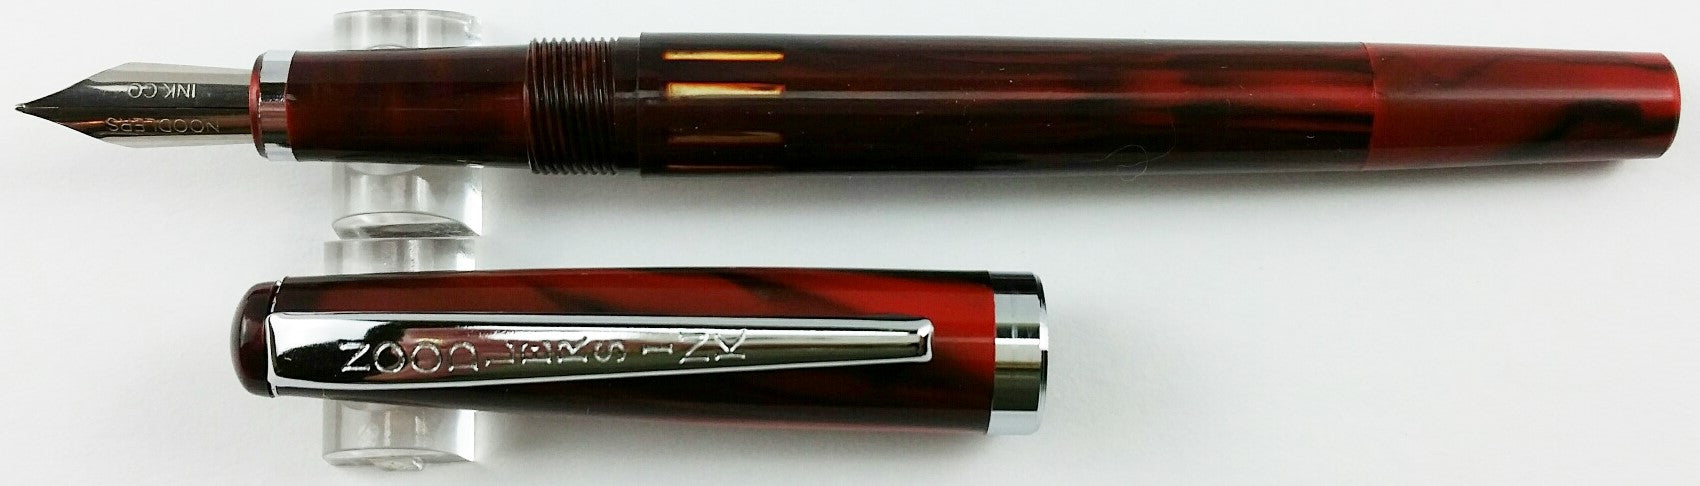 Noodler's Cardinal Darkness Standard Flex Fountain Pen